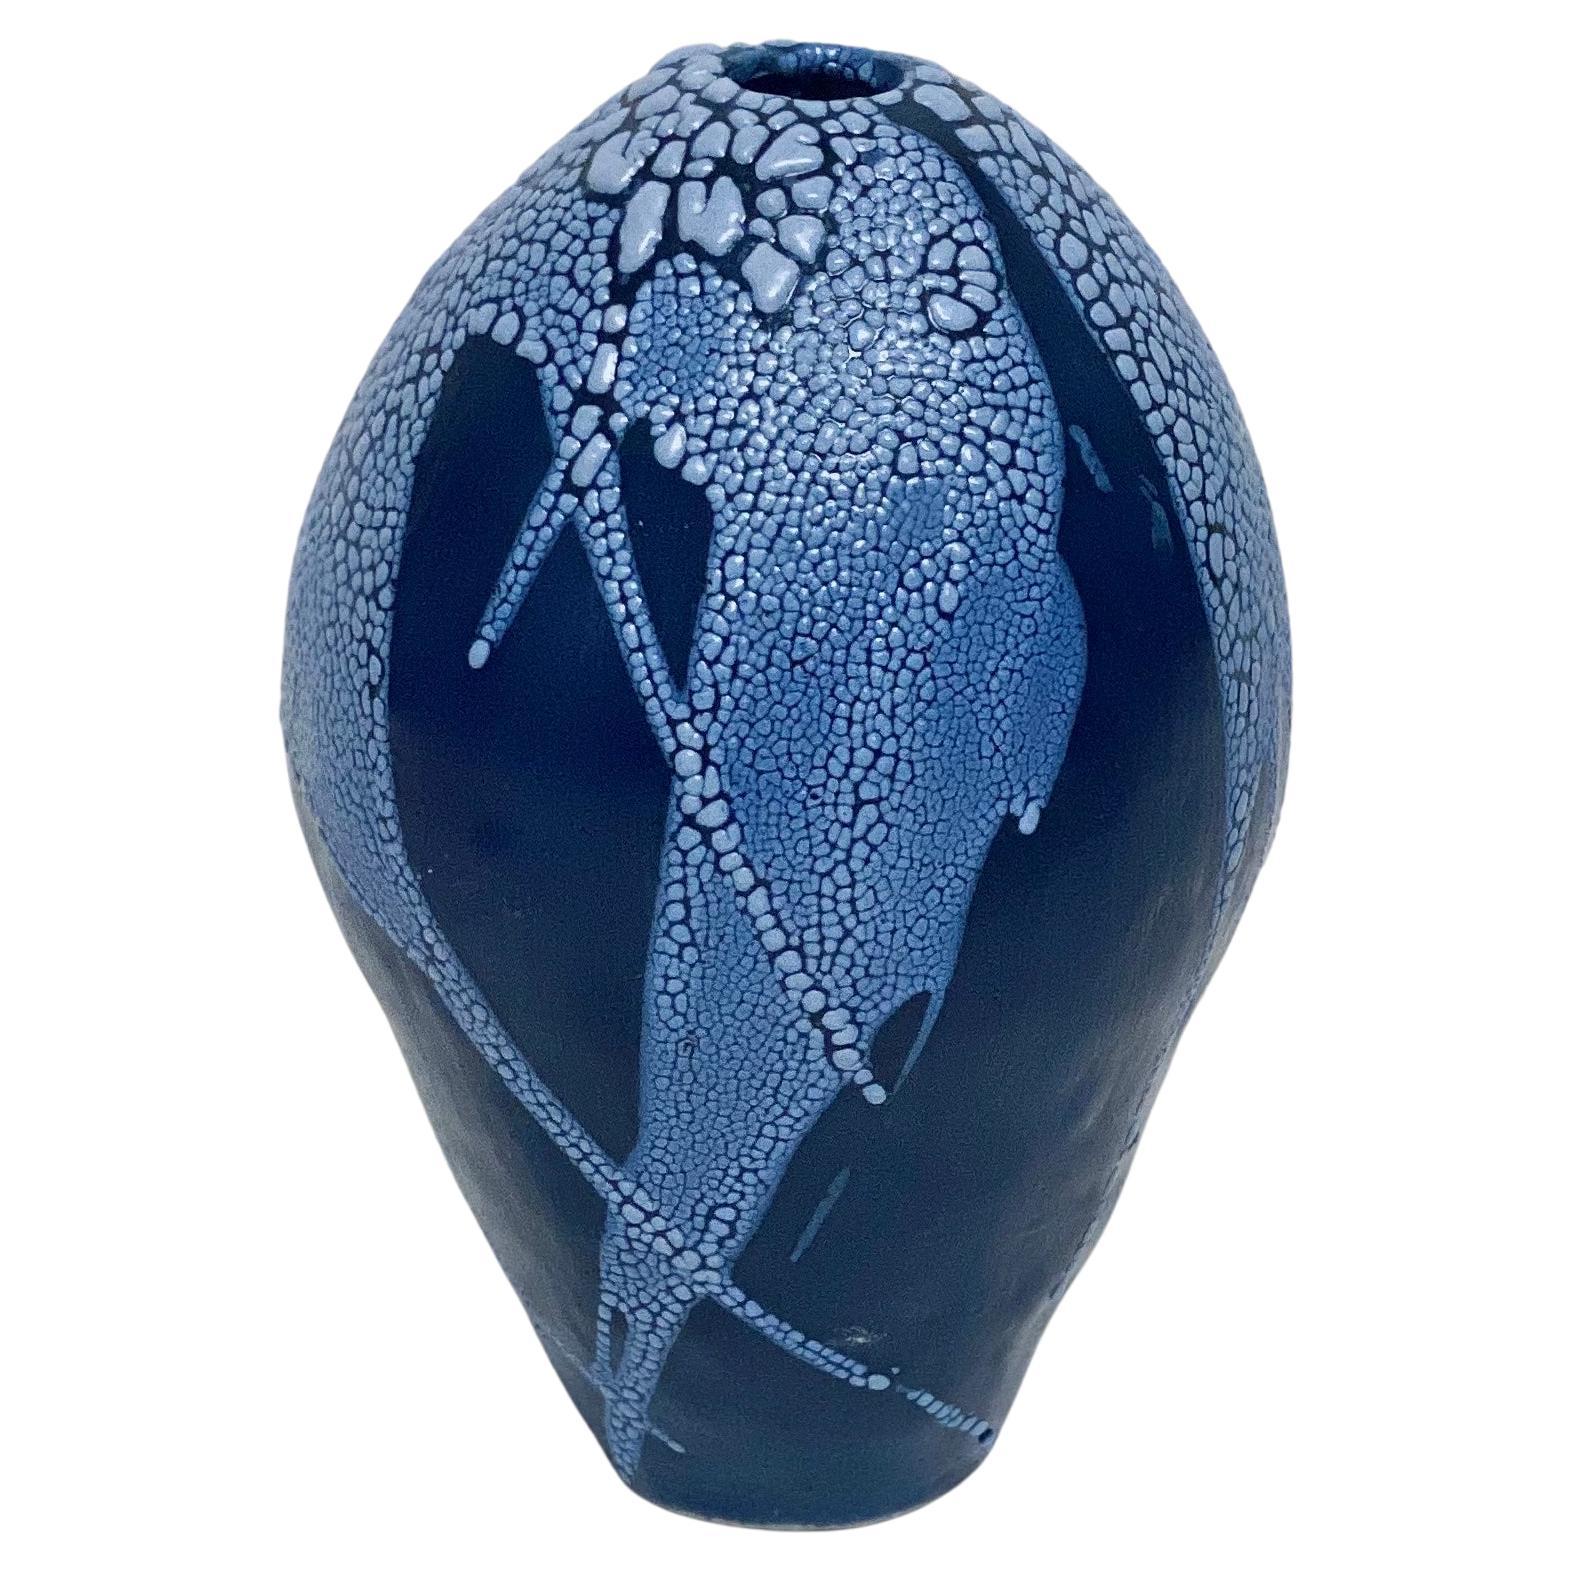 Blue/Blue Dragon Egg Vase by Astrid Öhman For Sale